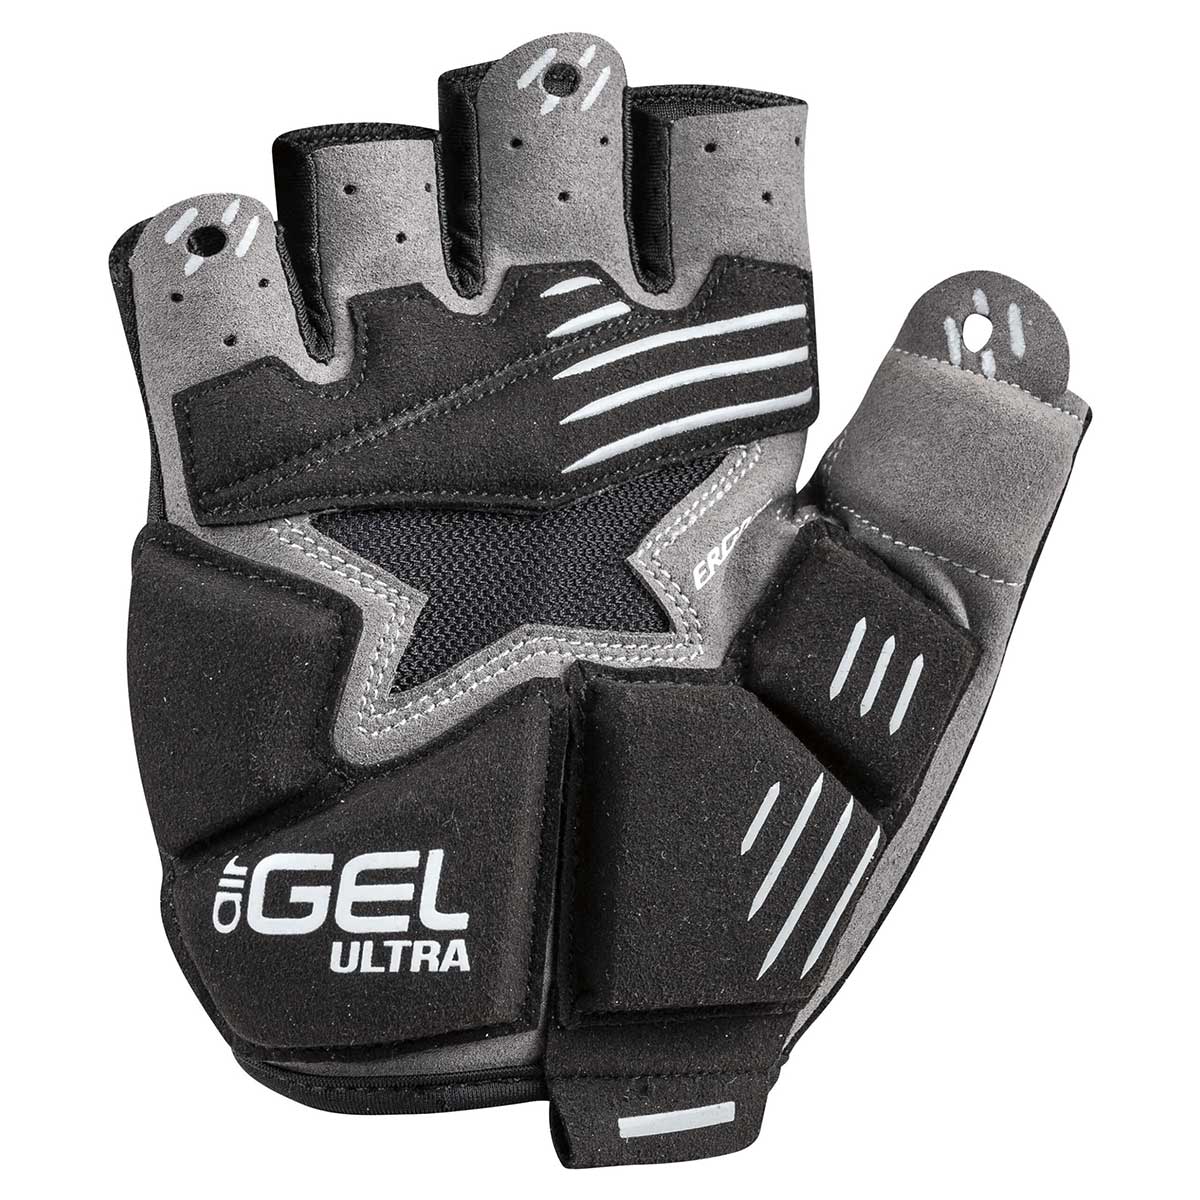 Louis Garneau Air Gel Ultra Cycling Glove